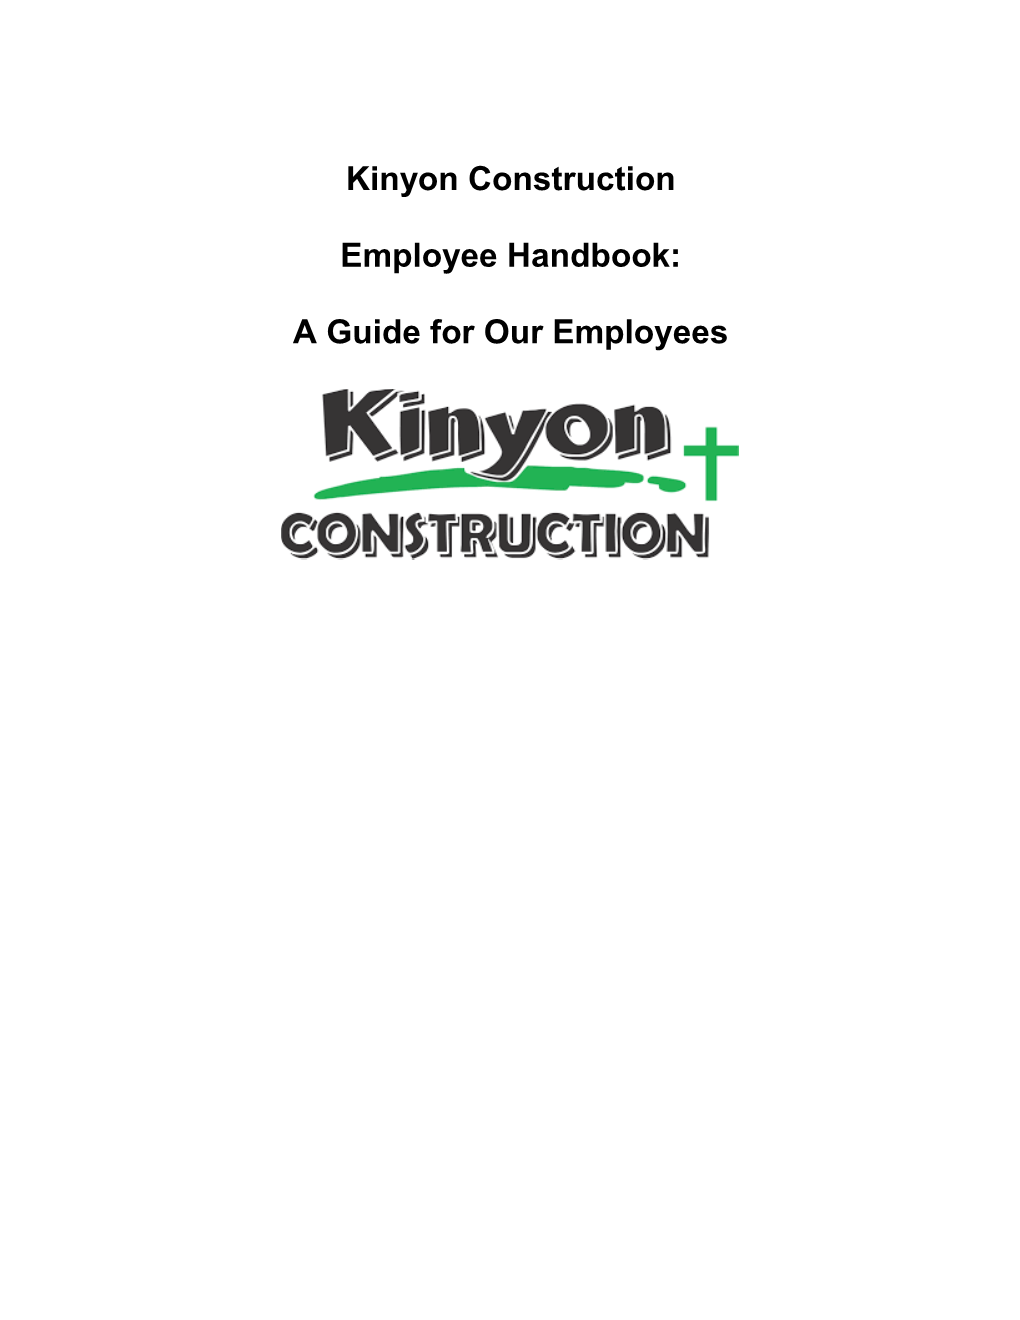 Kinyon Construction Employee Handbook: a Guide For